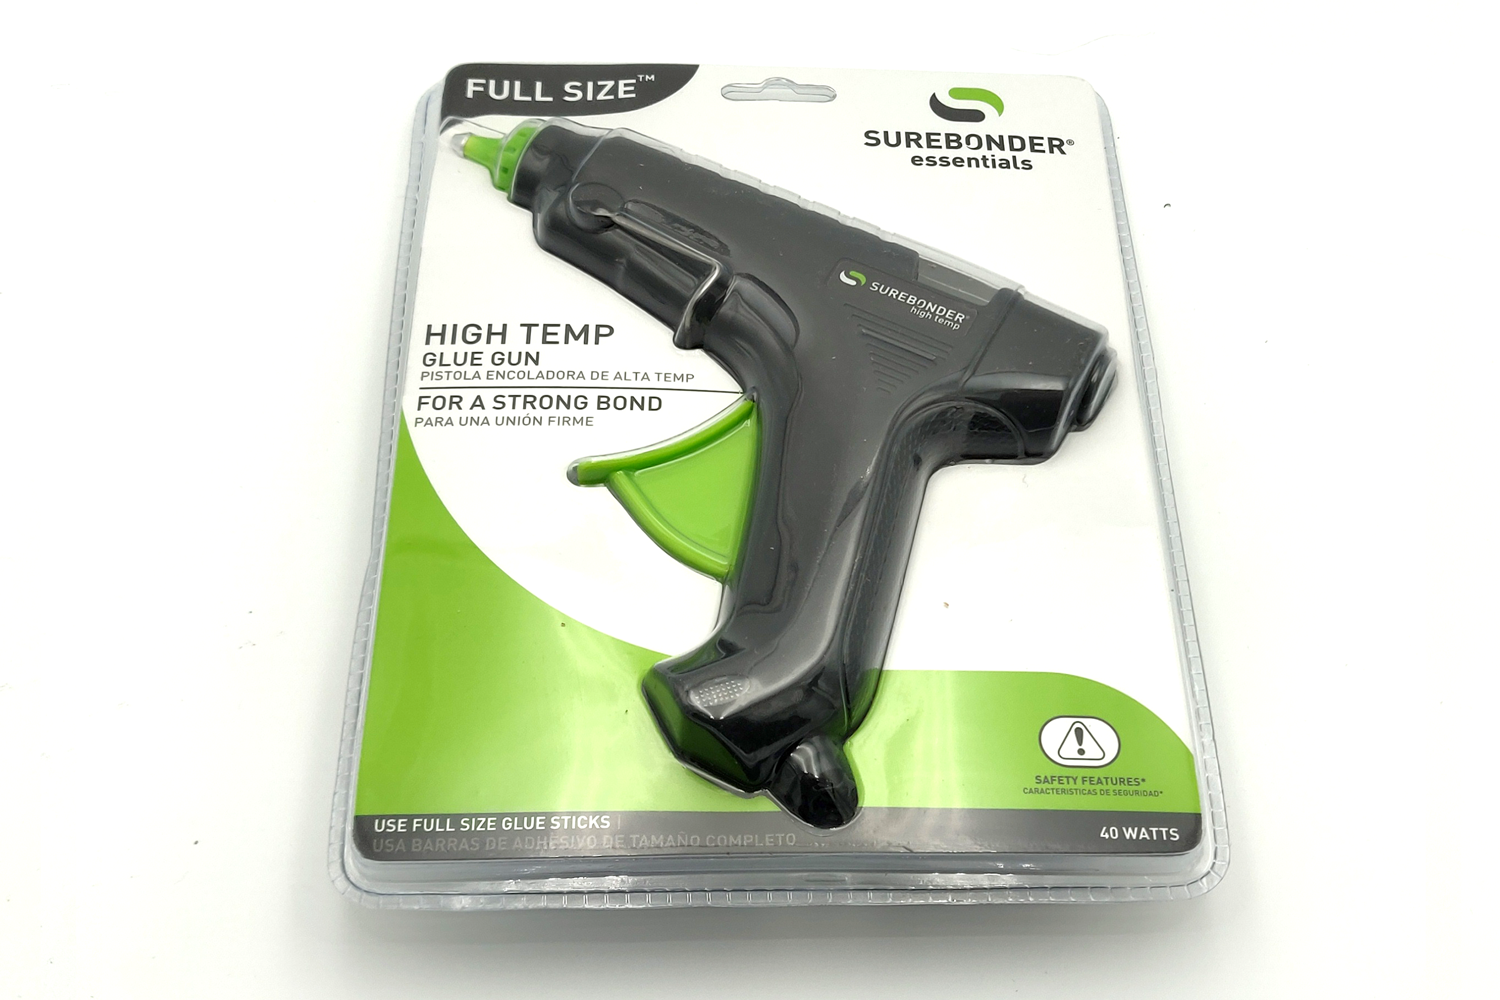 Full Size Low Temperature Glue Gun